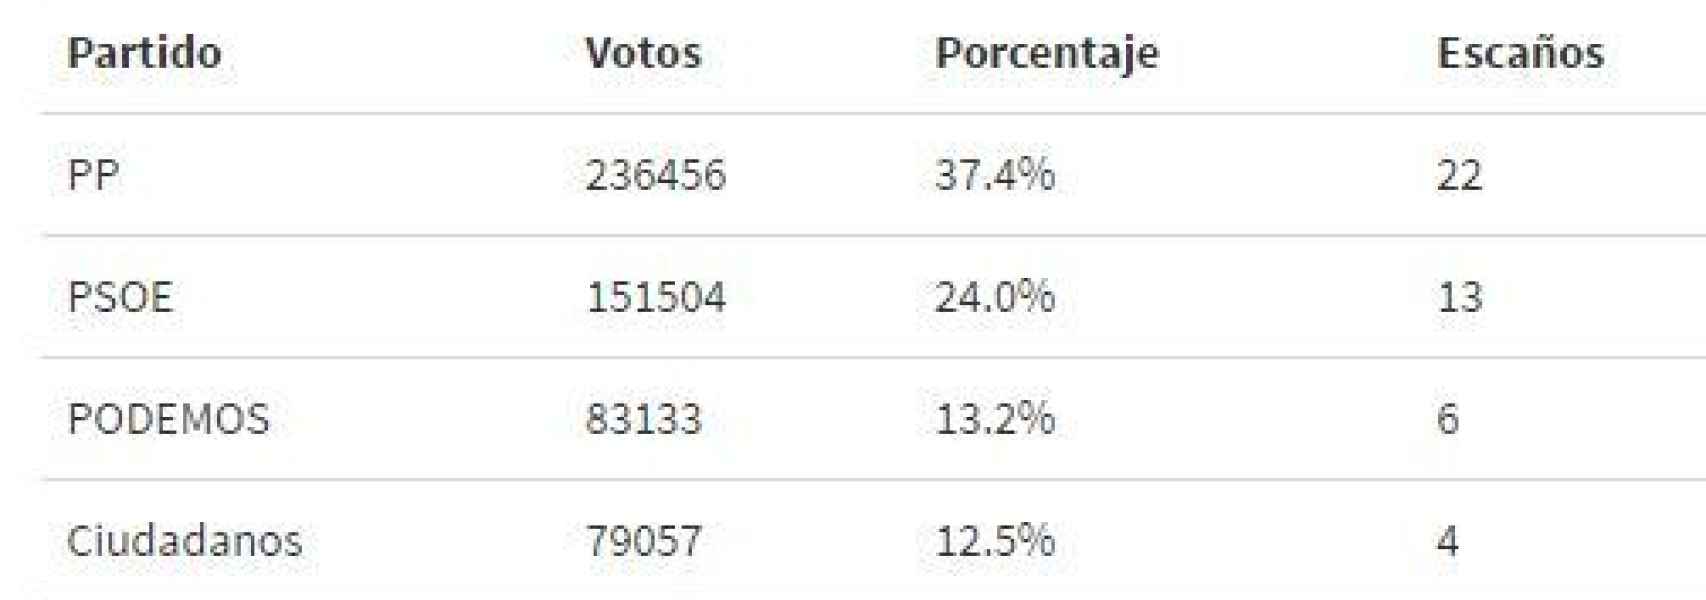 Resultados elecciones autonómicas 2015 Murcia.